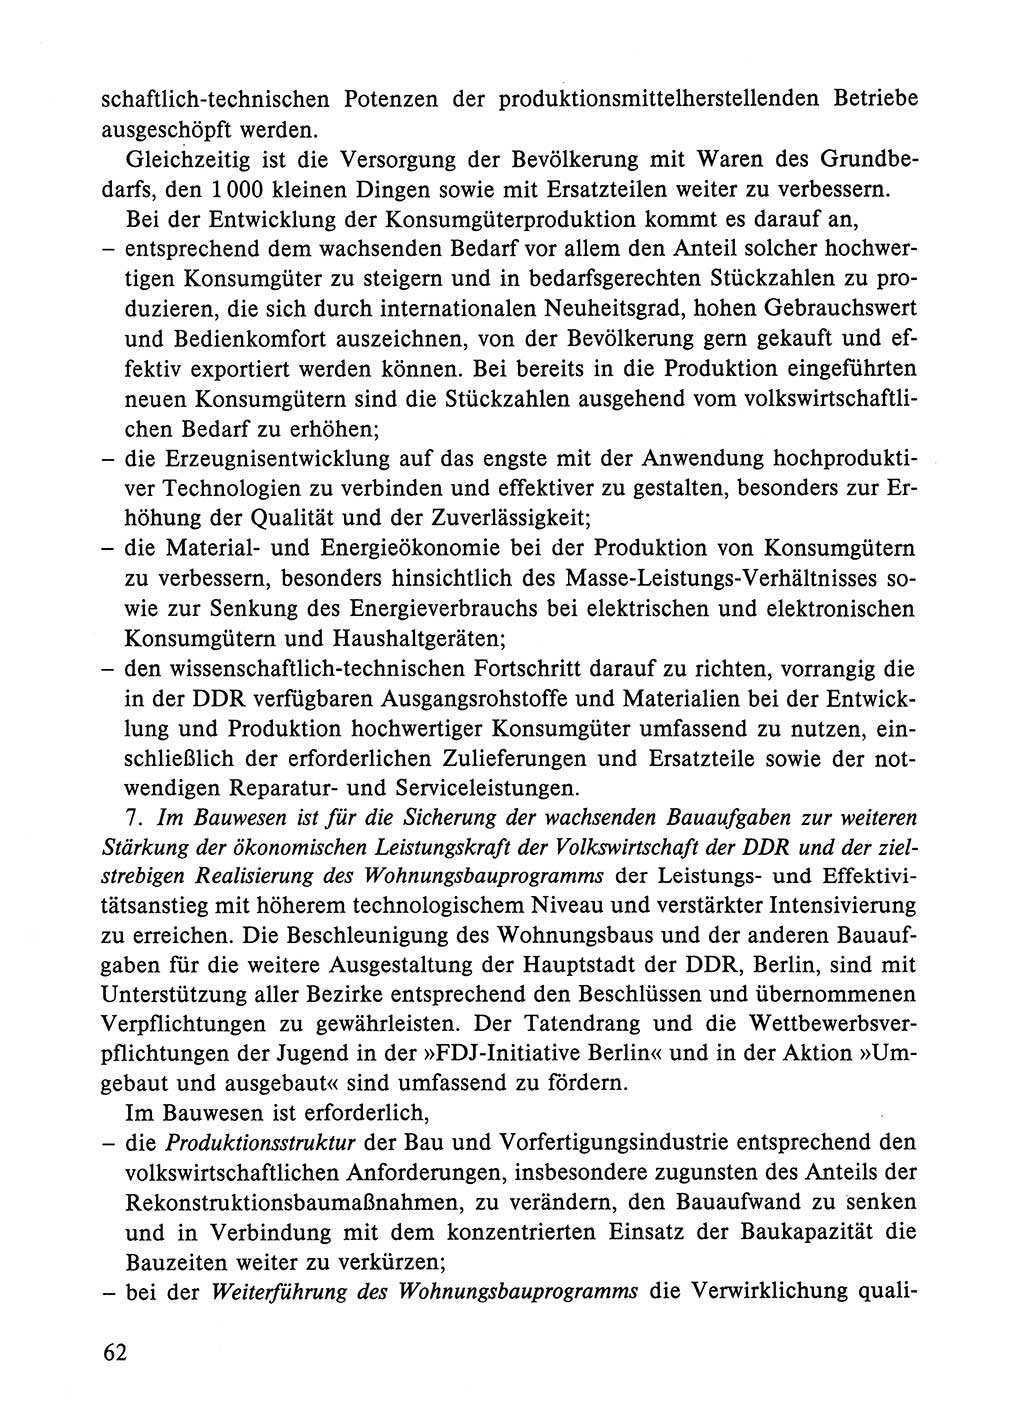 Dokumente der Sozialistischen Einheitspartei Deutschlands (SED) [Deutsche Demokratische Republik (DDR)] 1984-1985, Seite 62 (Dok. SED DDR 1984-1985, S. 62)